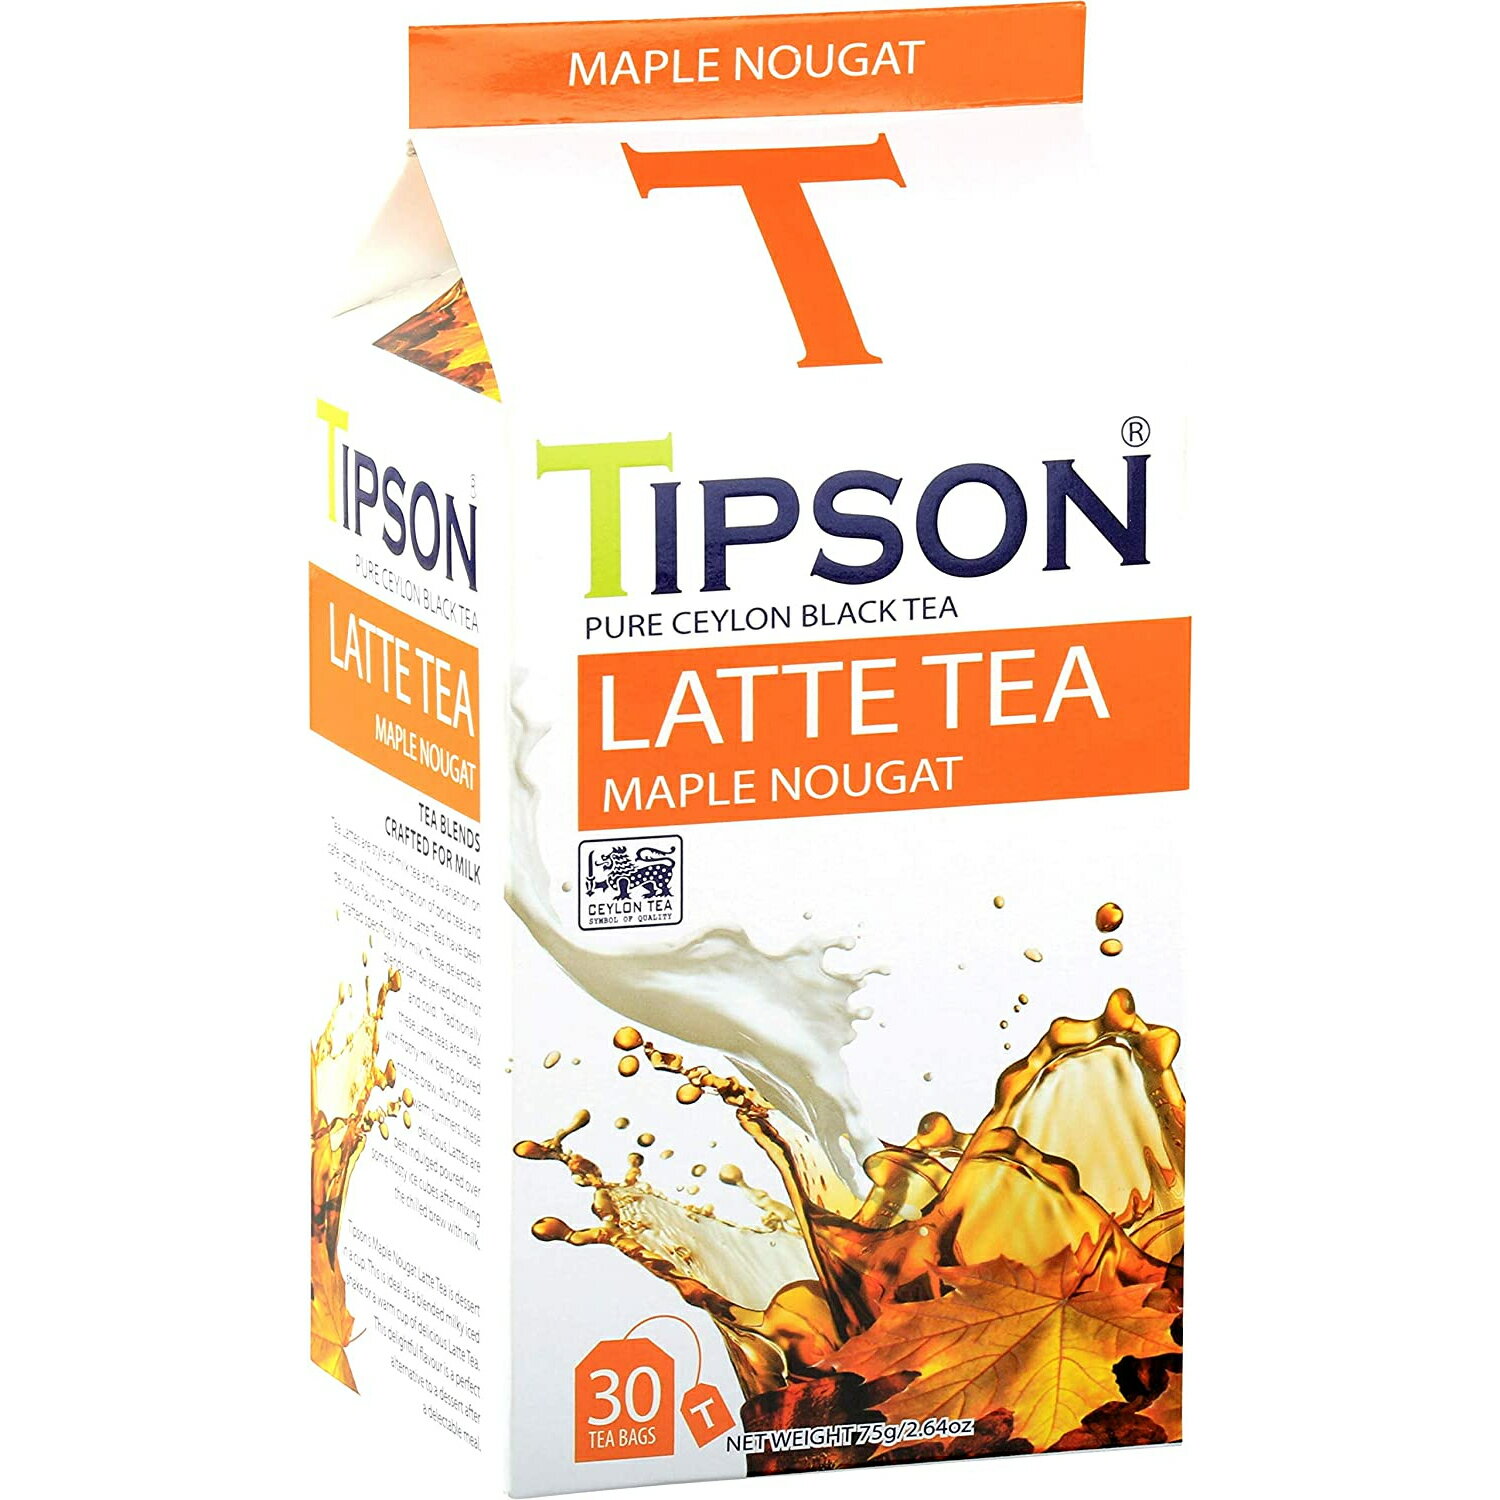 名称紅茶メーカーバシラーティー原産国スリランカ内容量75g（2.5g×30袋）保存方法高温多湿を避けて保存して下さい。輸入者株式会社BASILUR TEA JAPAN【BASILUR TEA】 バシラーティー歴史あるセイロンティー原産国、スリランカの紅茶ブランドです。 茶葉の原産地オリジナルブランド、 バシラーティーだからこそ実現できることがあります。 バシラーティーの工場ではHACCPを導入しISO22000を認証所得しており、その高い品質管理システムによって紅茶本来の風味や香り、深い味わいを余すところなく皆様にお届けすることができます。 広大で自然豊かなスリランカの大地で丁寧に栽培された茶葉は、上質な香りと深い味わいを持ち、皆様の特別な時間を上品に彩ることをお約束します。BASILUR TEA バシラーティー ［ミルクティー専用紅茶］ メープルヌガー（ティーバック30袋入）バシラーティー初、ミルクティー専用紅茶が登場！ しっかりとしたコクと、甘いメープルの香りが漂いまるでスイーツを飲んでいるかのよう。 お好みの量のミルクでお楽しみください。